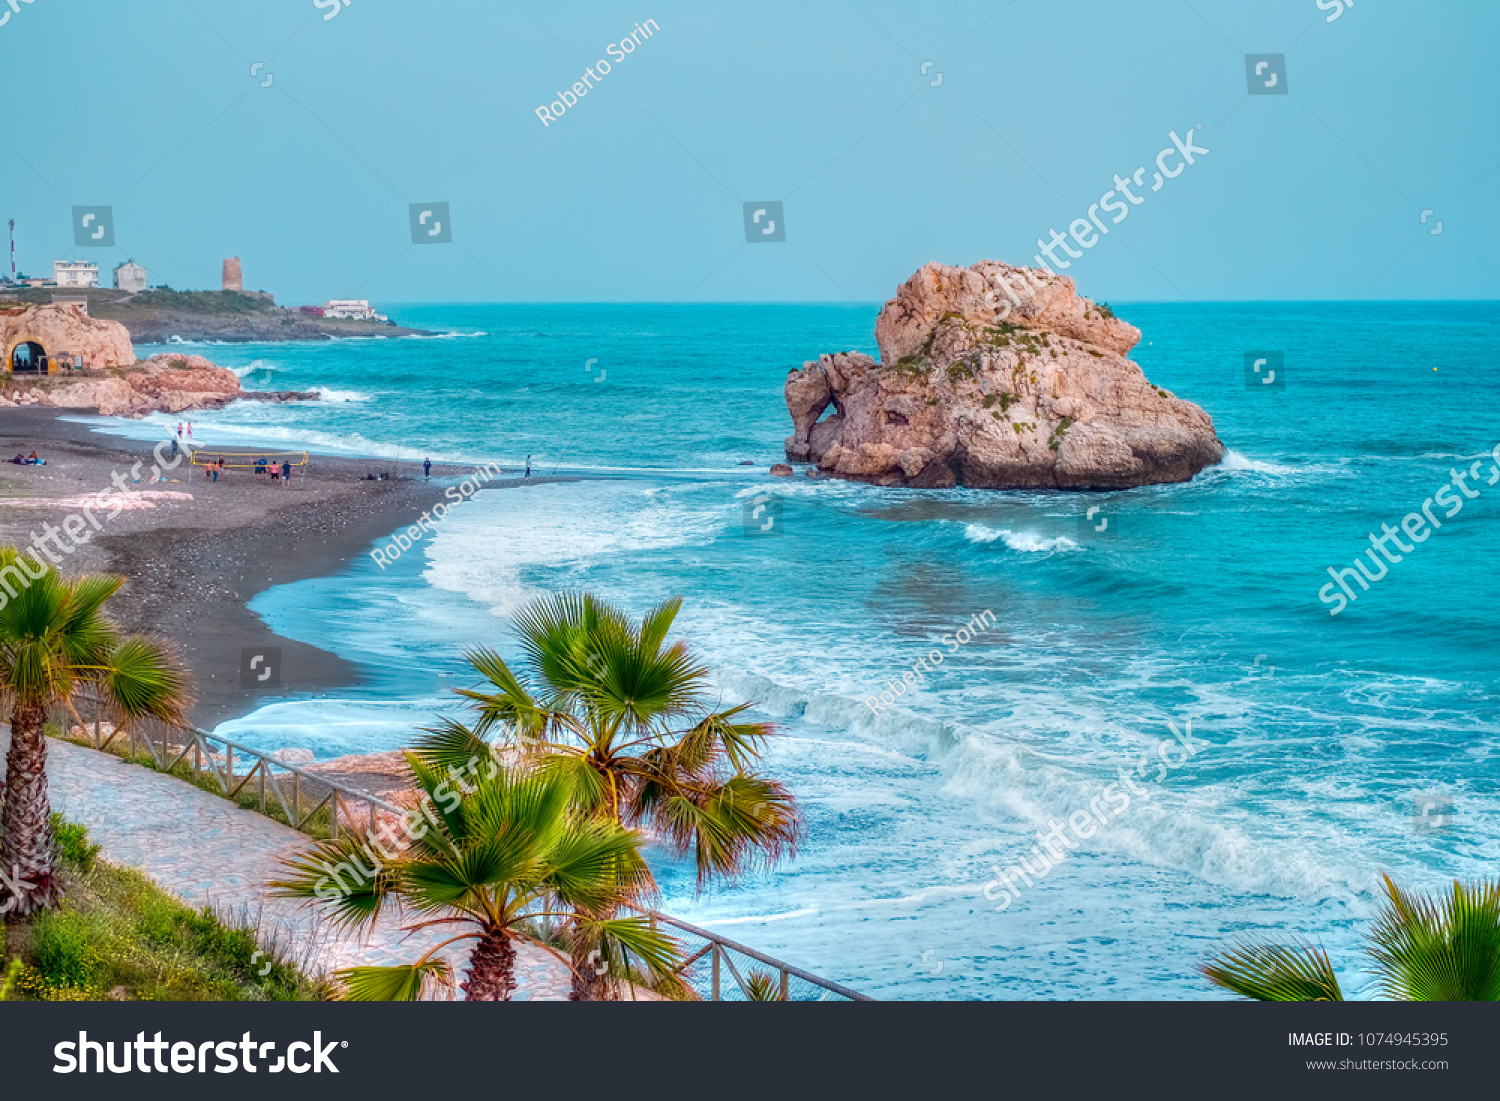 Penon del Cuervo beach. Costa del sol, Malaga, Spain #1074945395